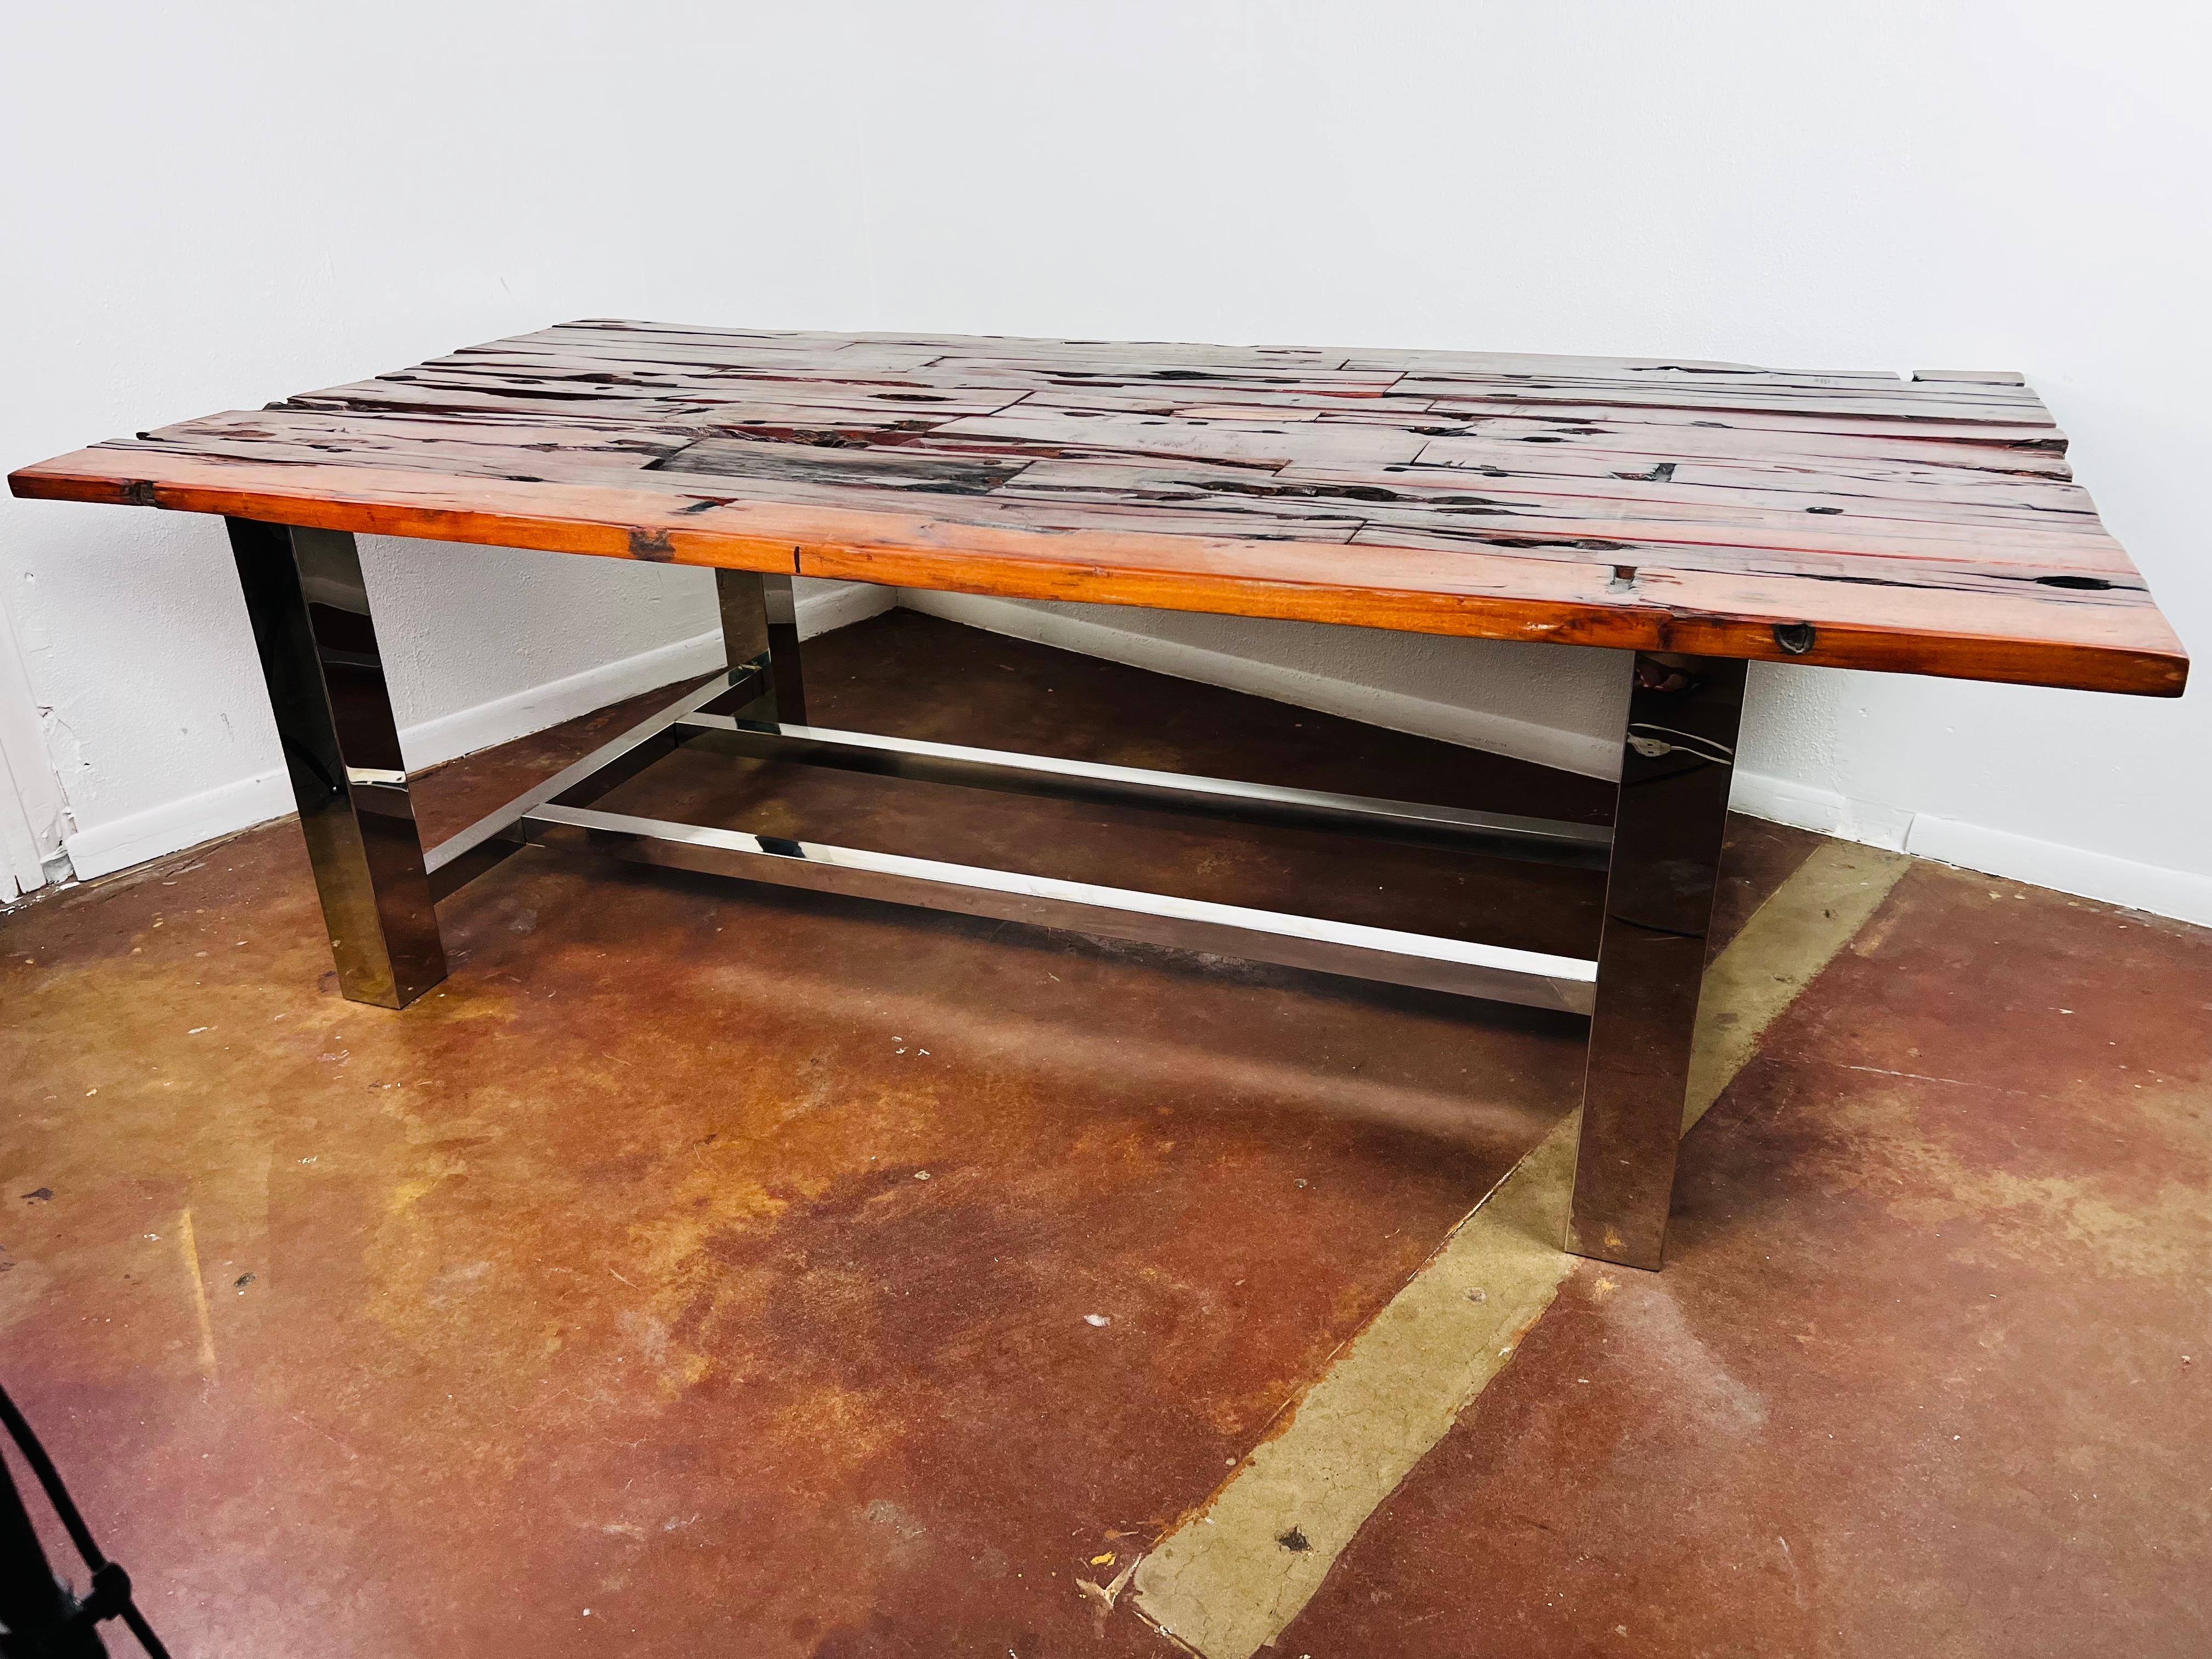 La nature se transforme en une œuvre d'art fonctionnelle avec cette table artisanale qui met en valeur la beauté du bois. Le cadre en acier inoxydable confère un style moderne et poli. Acheté à la Casa Palacio à Mexico.

Nous expédions dans le monde